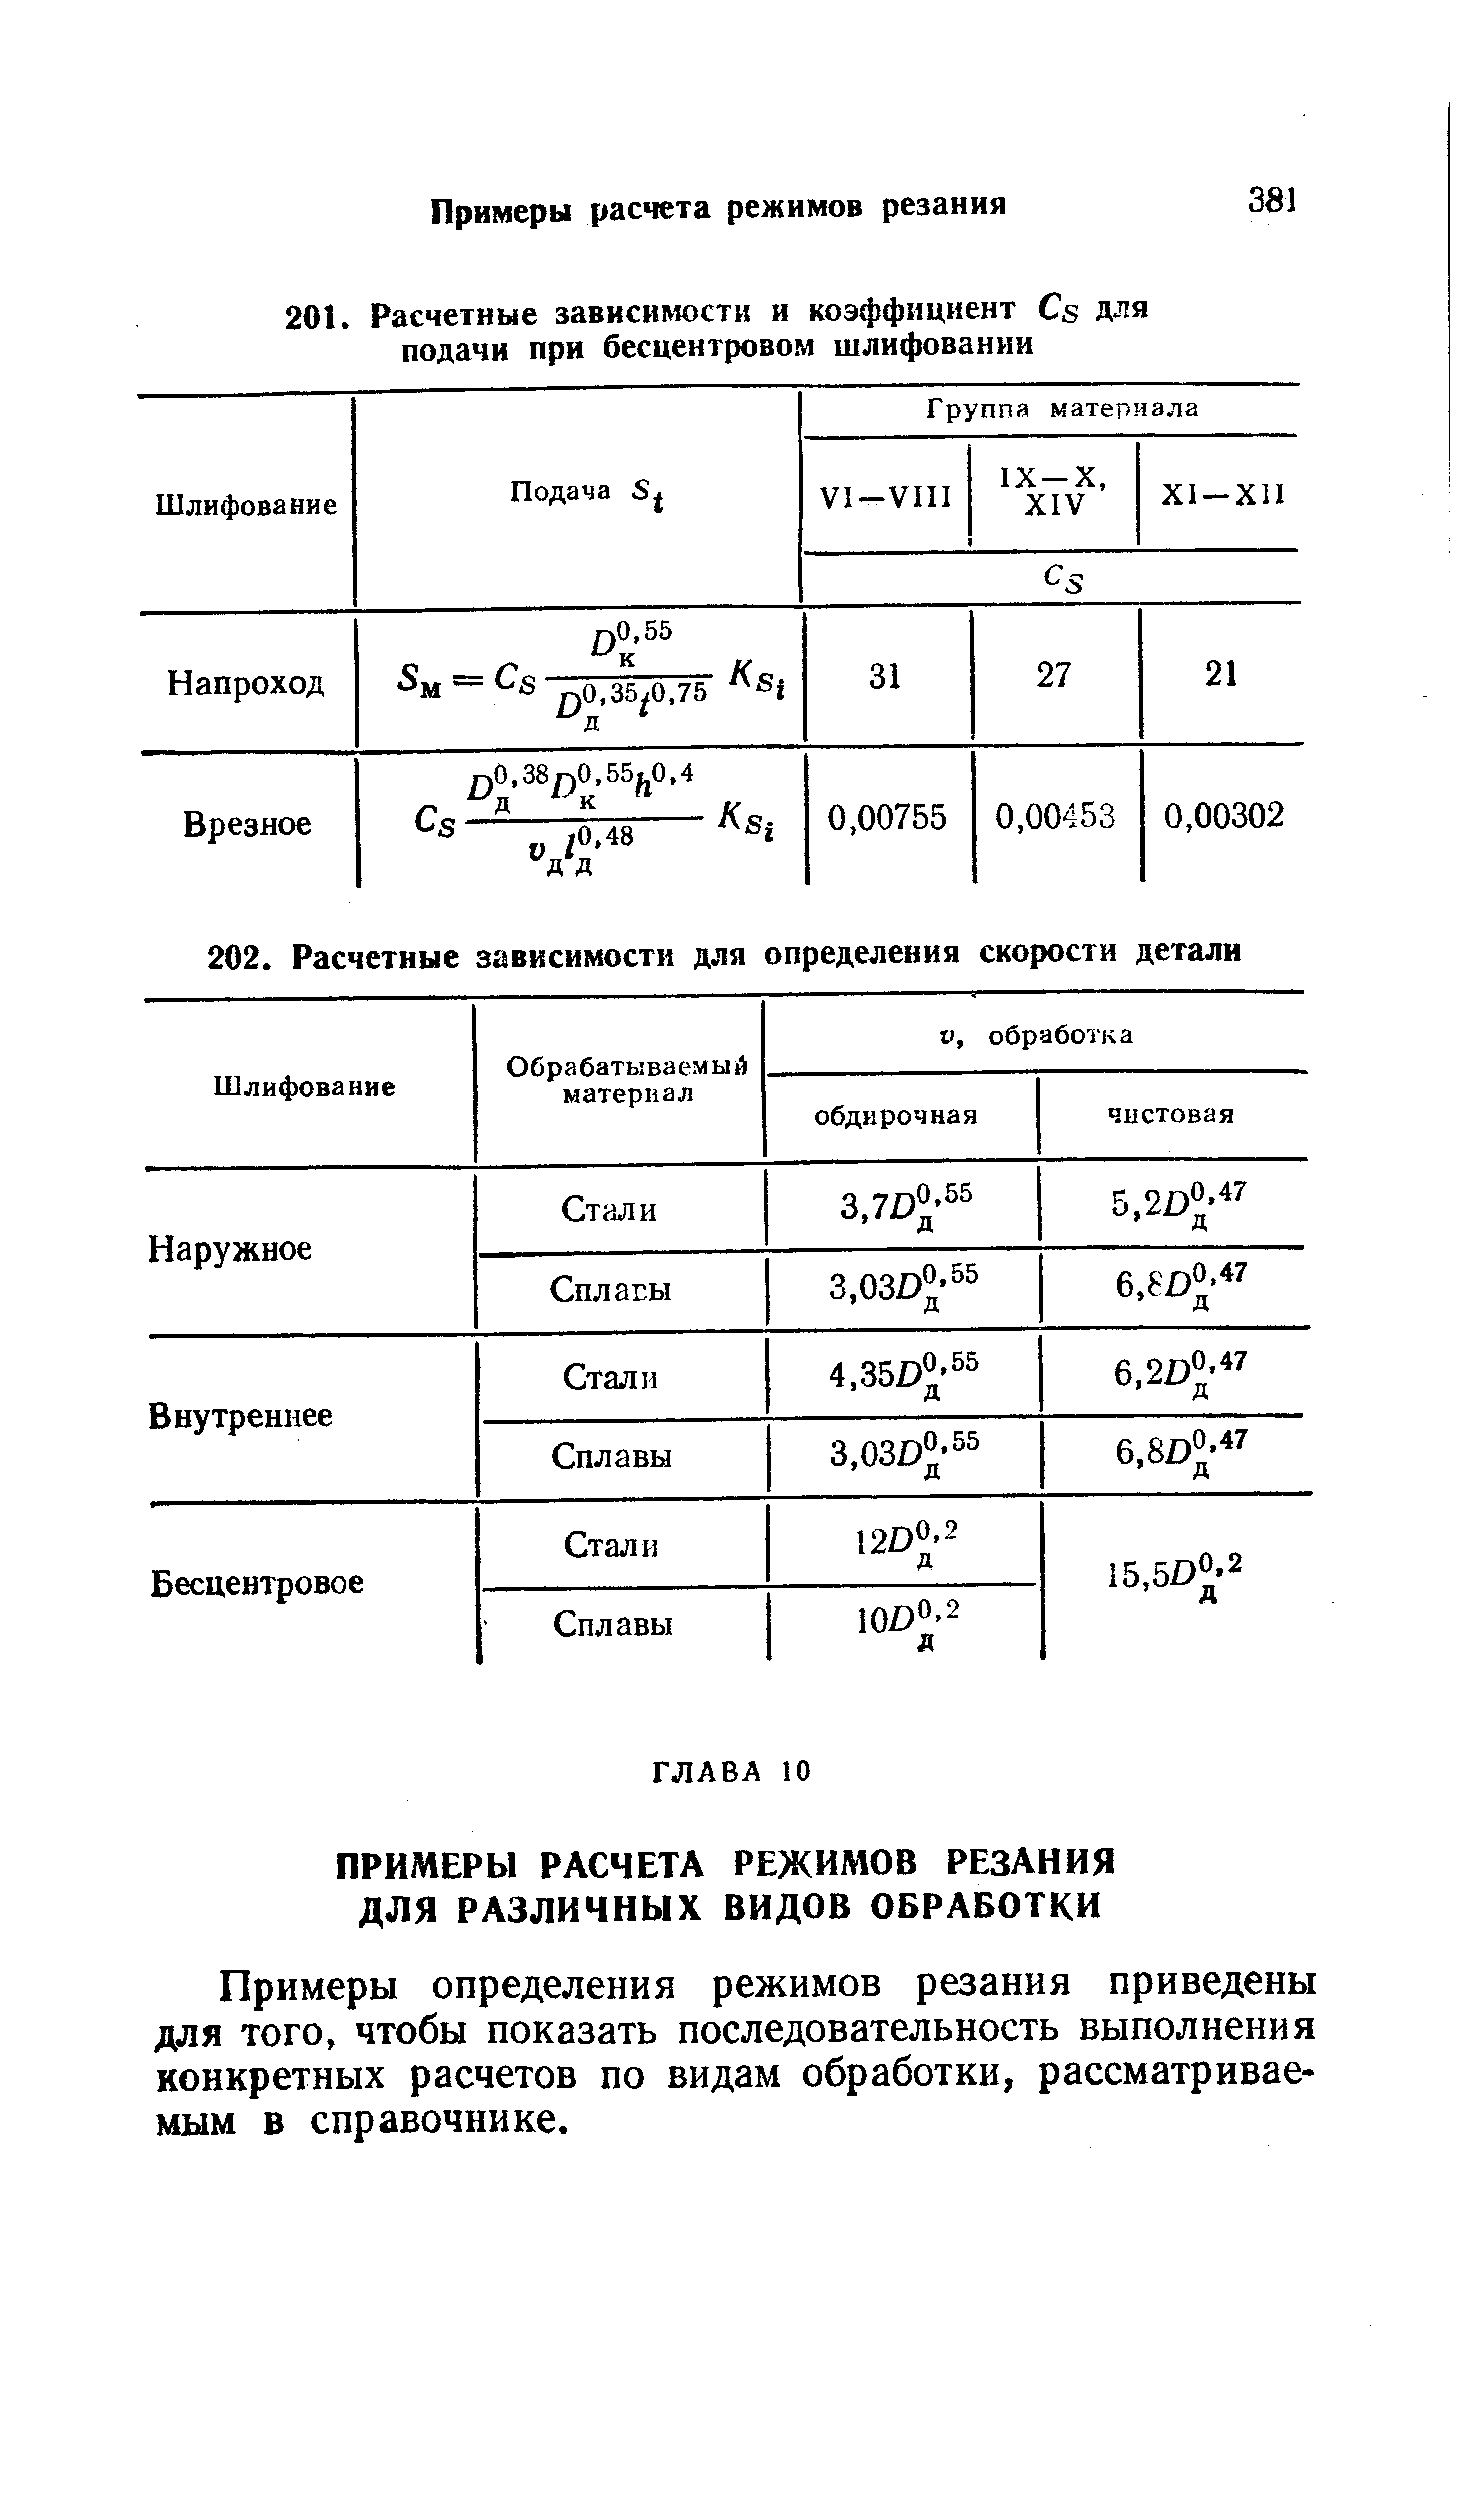 Примеры определения режимов резания приведены для того, чтобы показать последовательность выполнения конкретных расчетов по видам обработки, рассматриваемым в справочнике.
